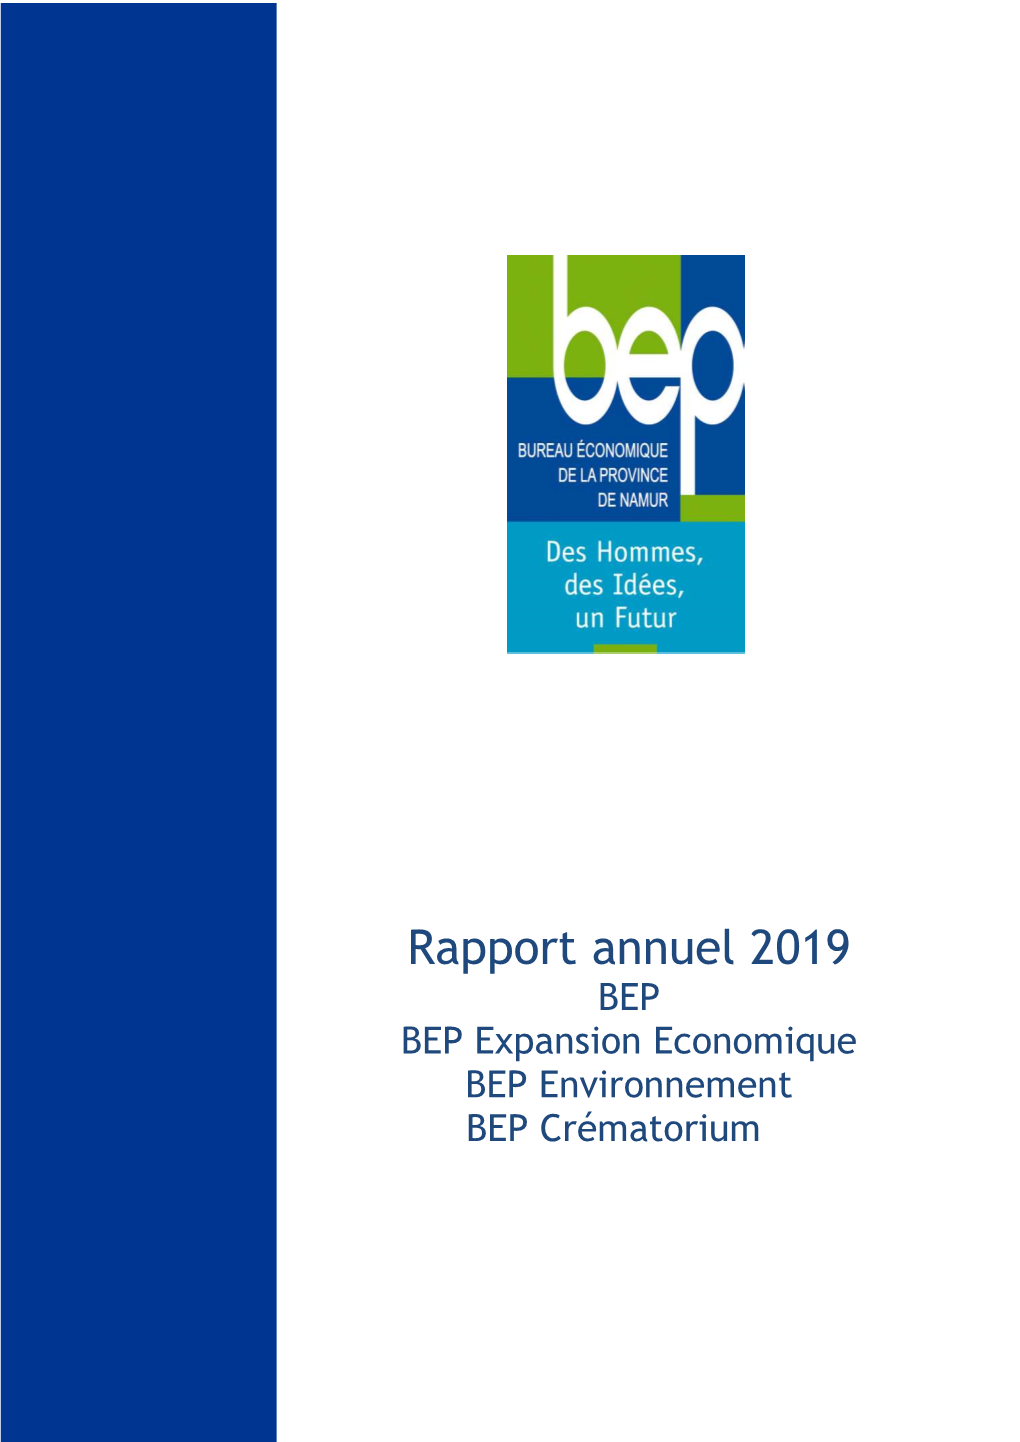 Rapport Annuel 2019 BEP BEP Expansion Economique BEP Environnement BEP Crématorium Rapport Annuel Du BEP